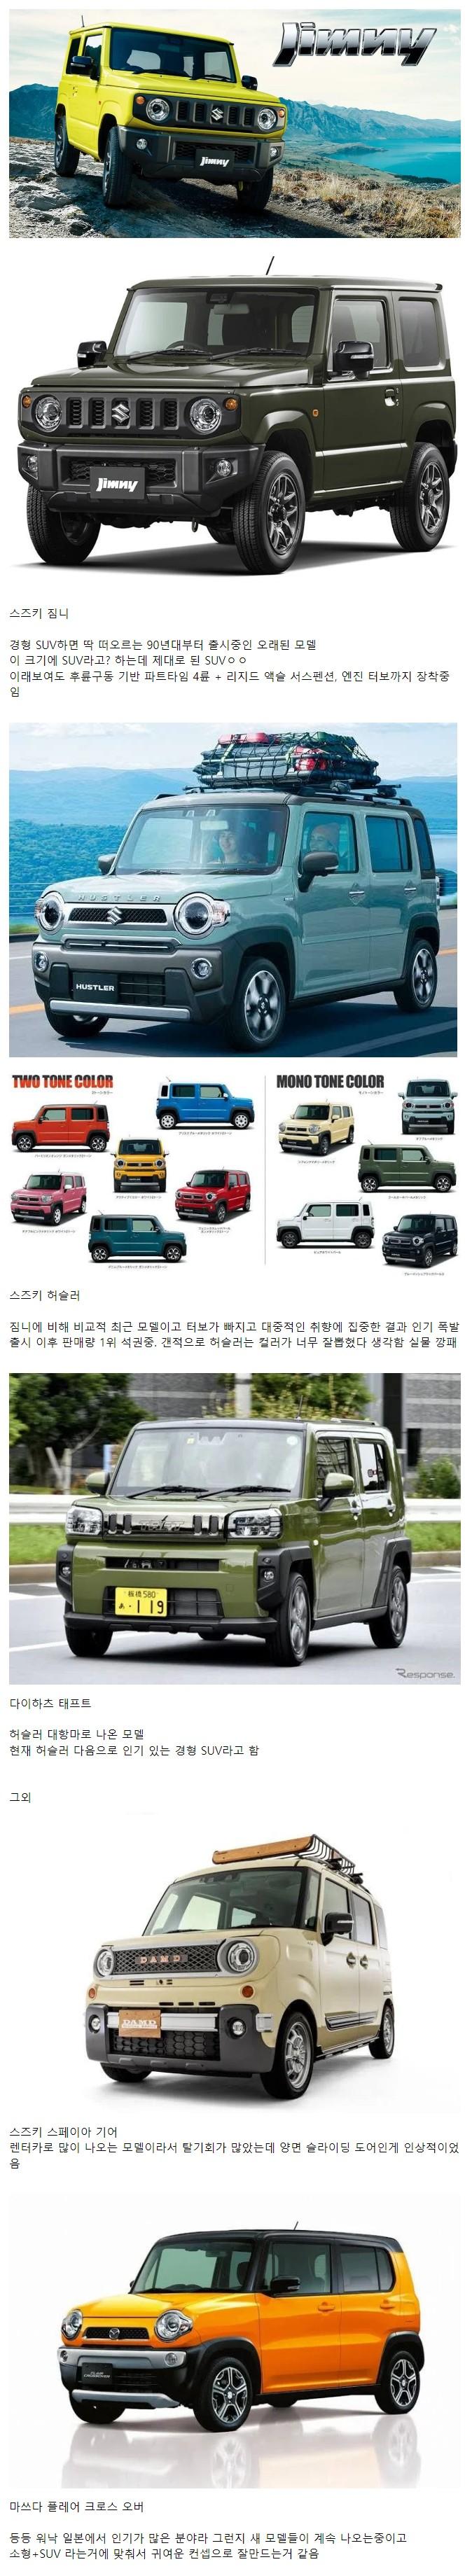 일본에서 인기 많다는 소형 SUV들